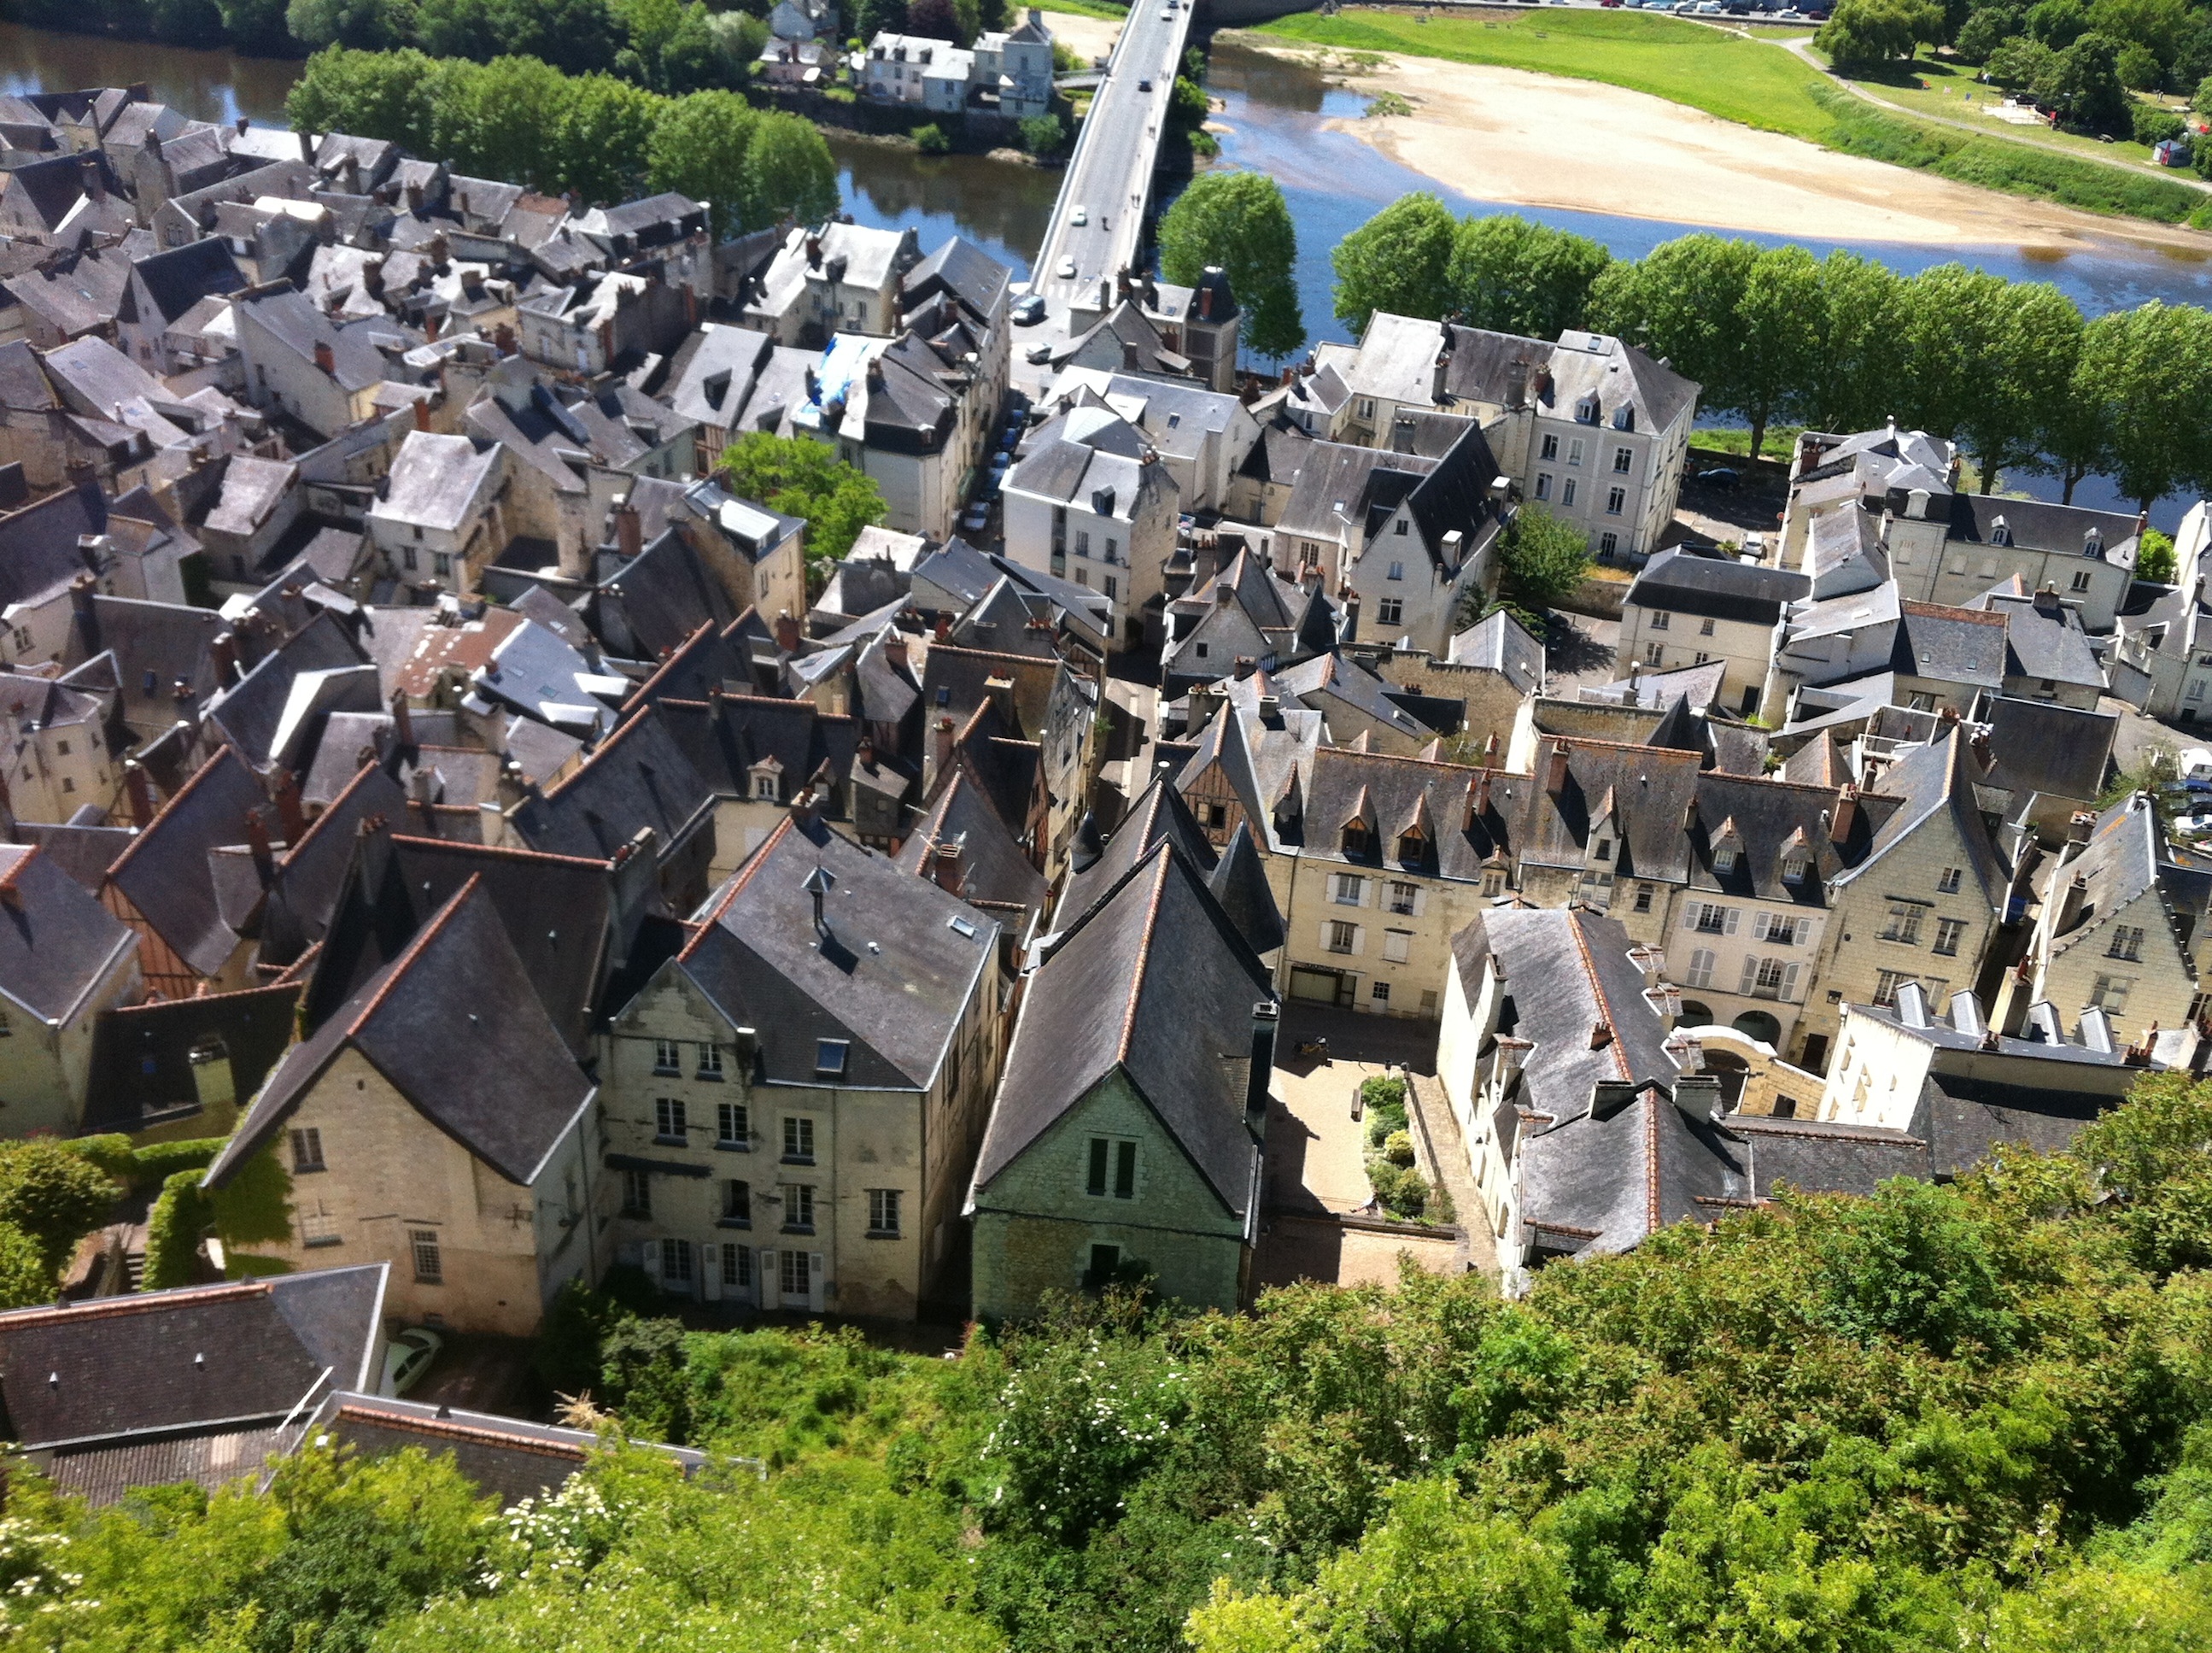 Châteaux privés, hôtels particuliers... le donjon du Coudray offre une vue à 360° sur les toits de la ville...